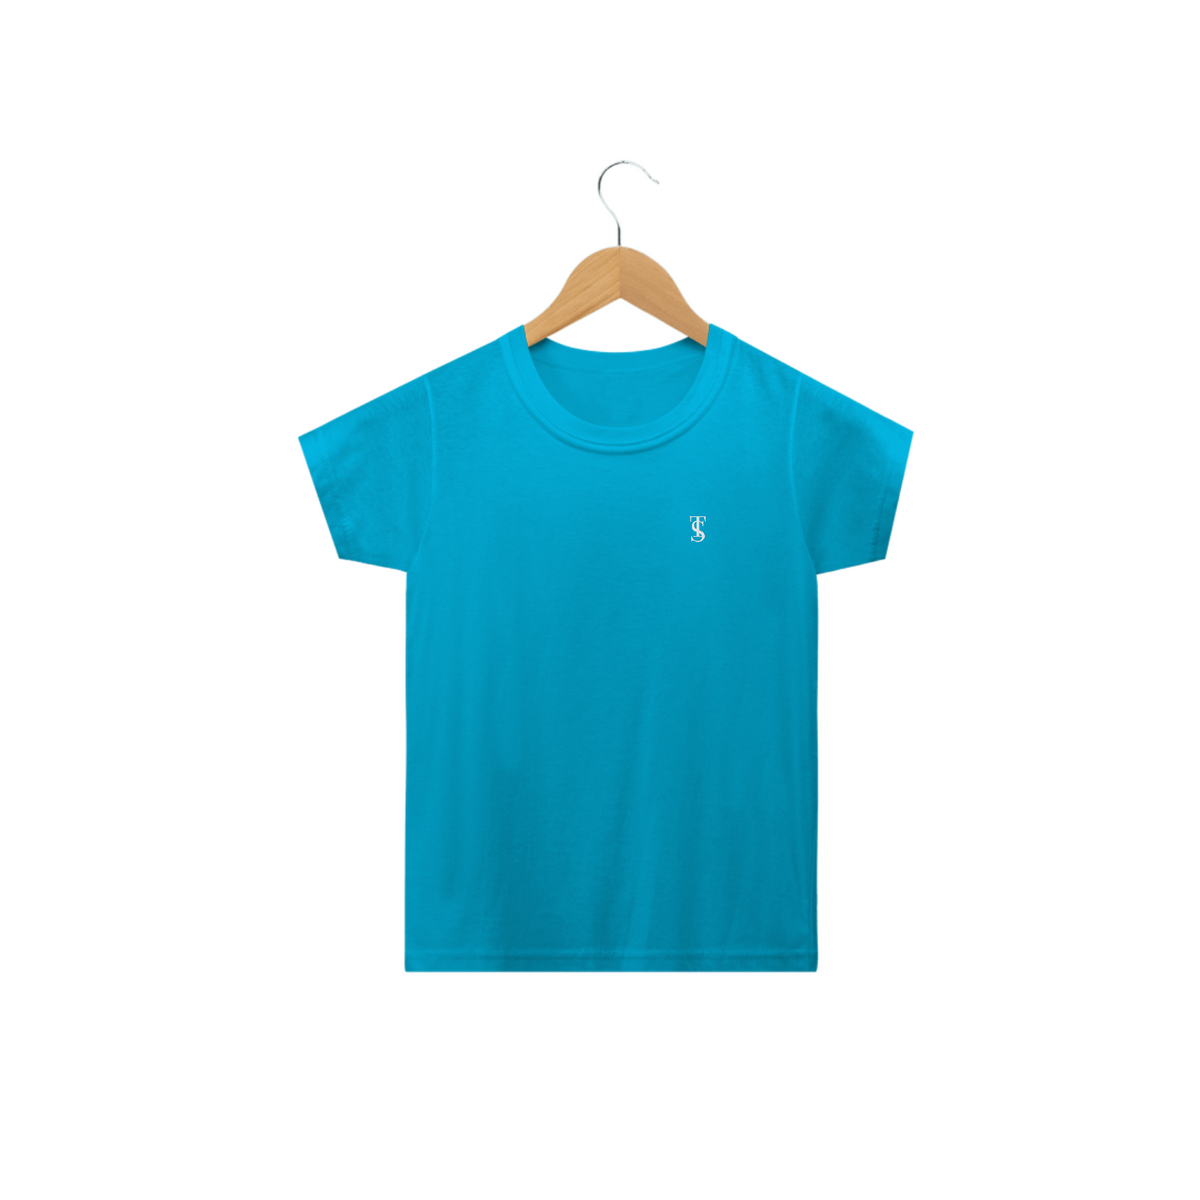 Nome do produto: Camiseta Básica Infantil Azul Turquesa